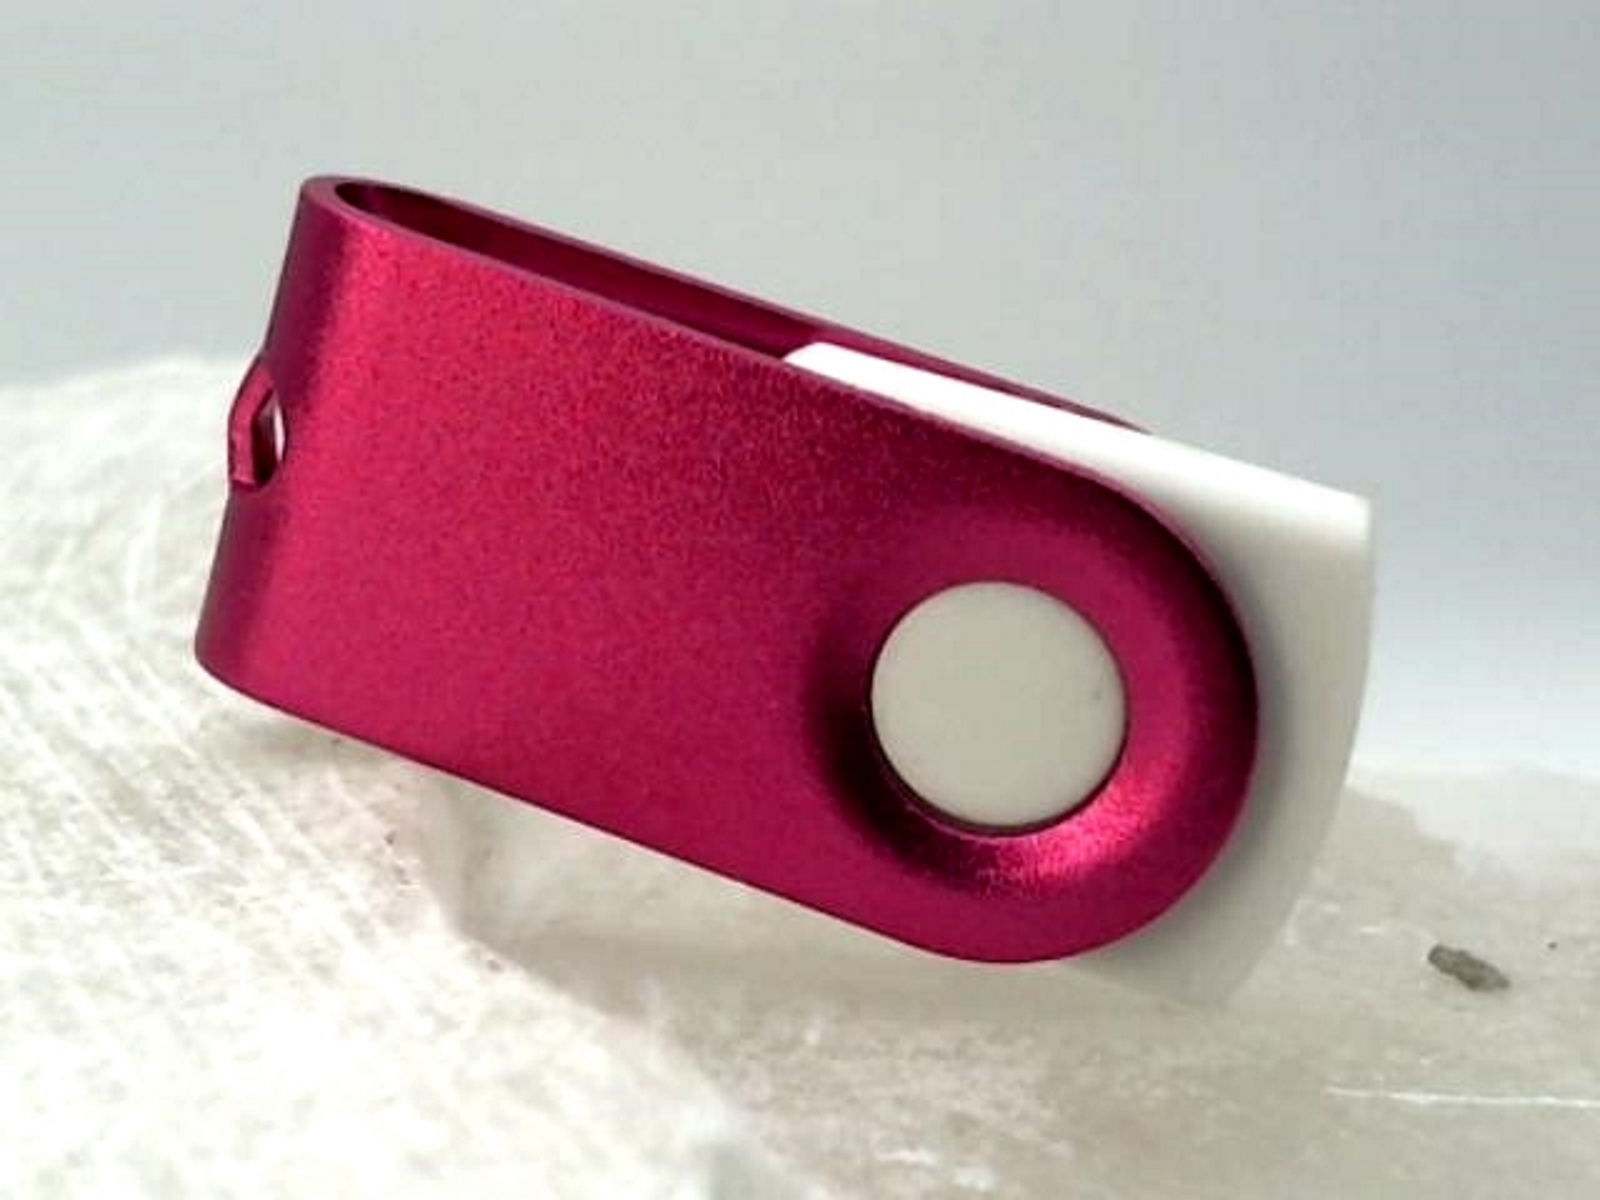 GERMANY (Weiß-Pink, 128 MINI-SWIVEL GB) USB-Stick ® USB